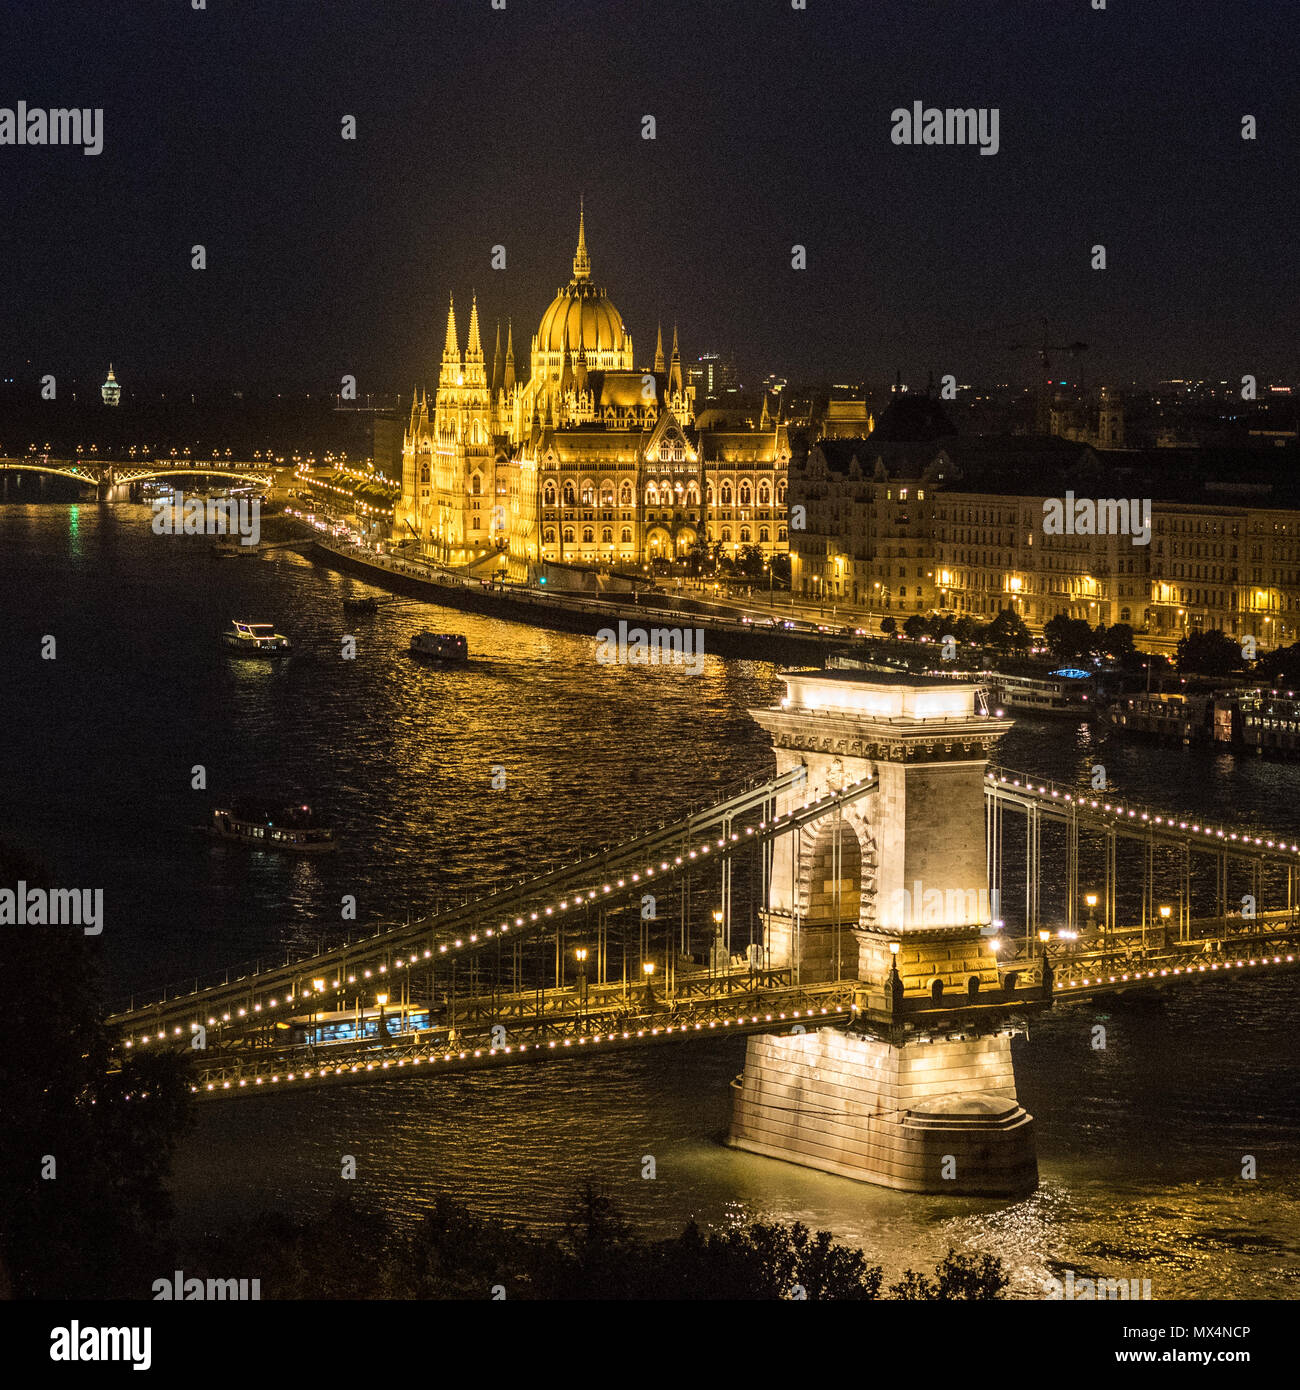 'Szechenyi Chain Bridge' sospensione ponte che attraversa il fiume Danubio con il Parlamento ungherese edificio dietro, Budapest, Ungheria. Foto Stock